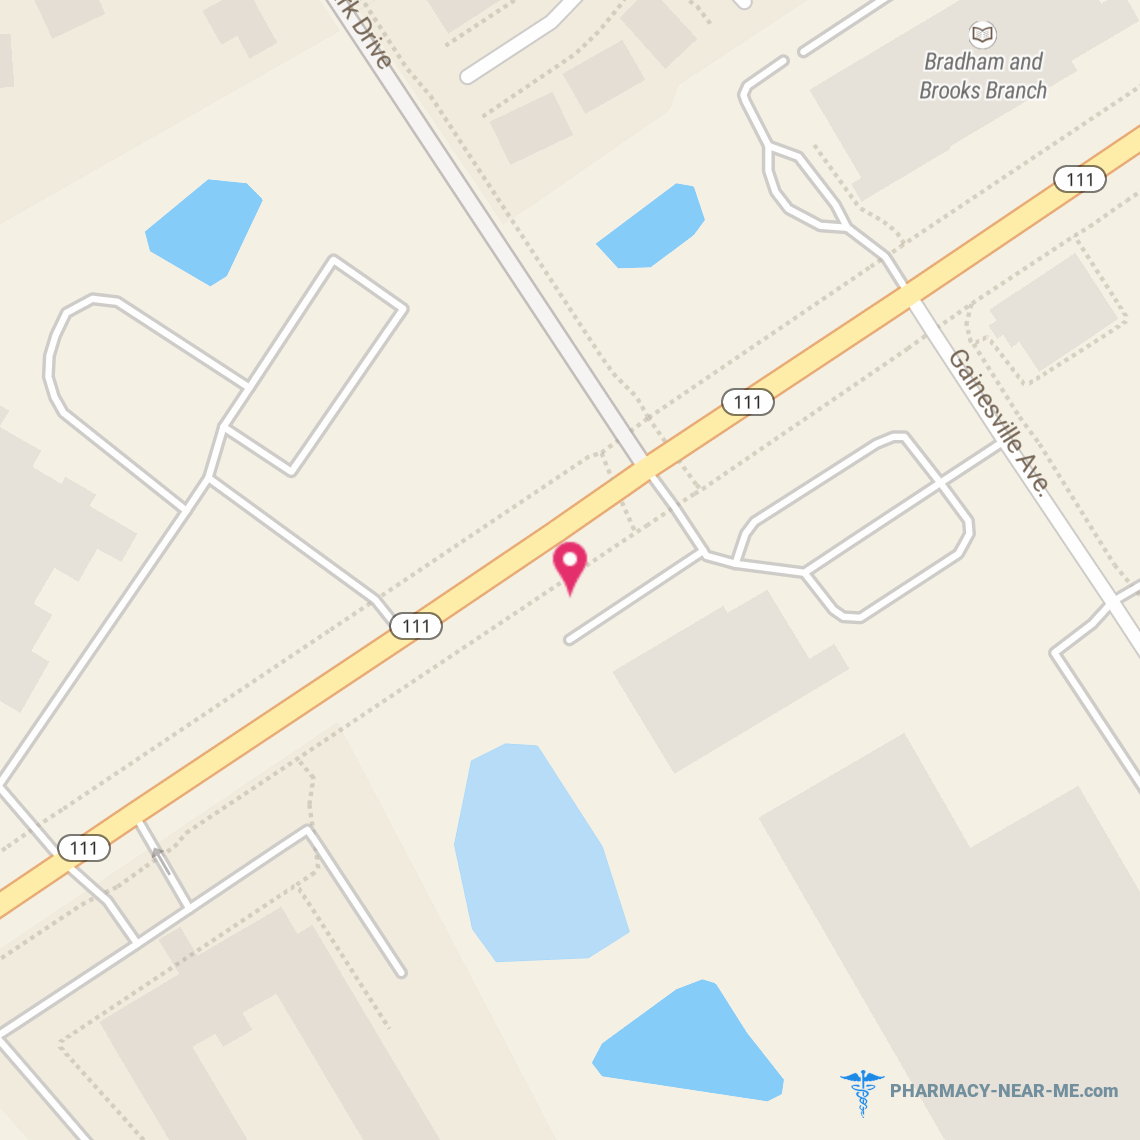 SETON PHARMACY NORTHSIDE - Pharmacy Hours, Phone, Reviews & Information: 1760 Edgewood Avenue West, Jacksonville, Florida 32208, United States